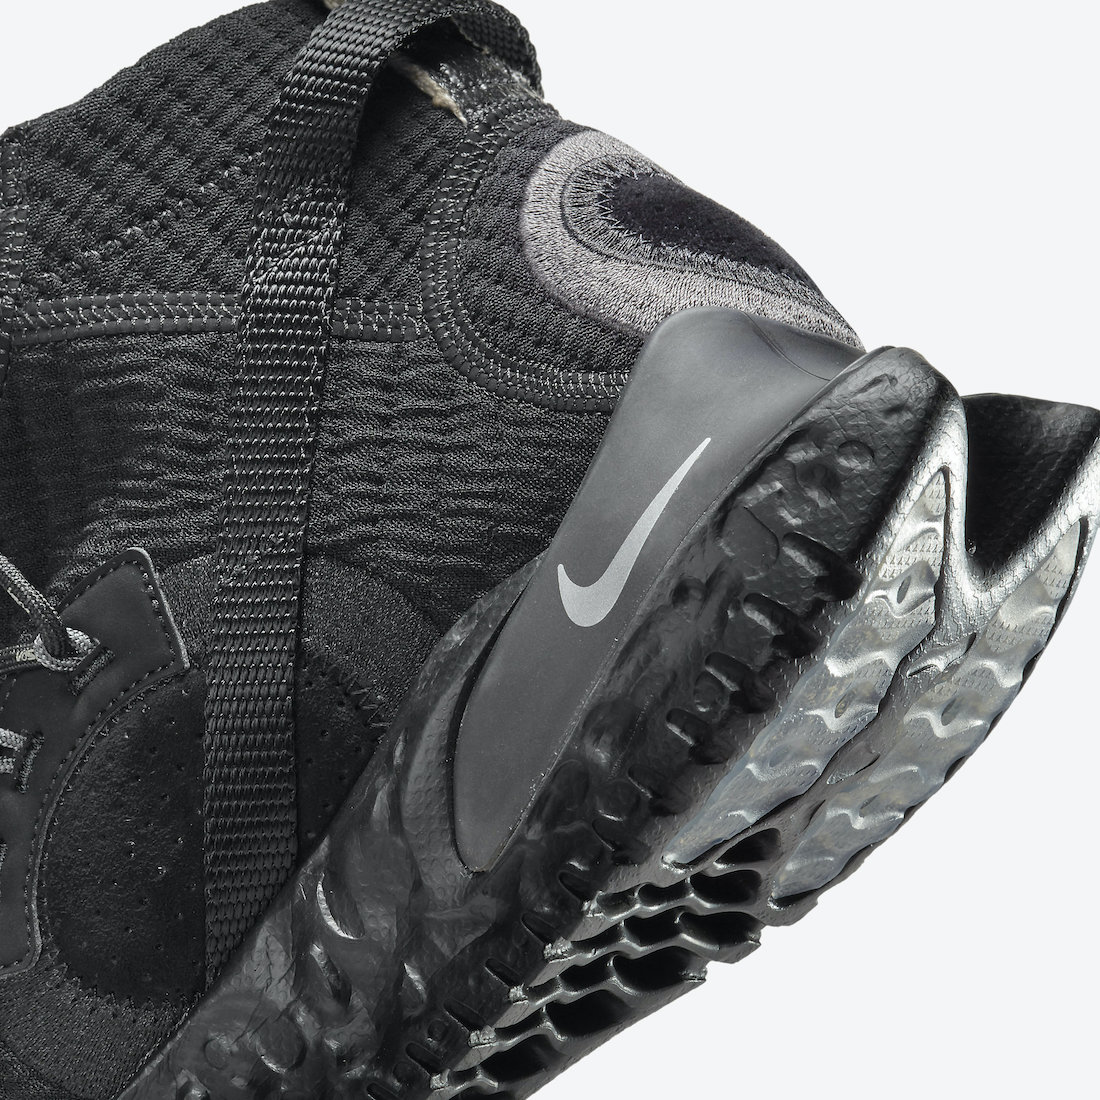 Nike ISPA Flow 2020 SE Black CW3045-002 Release Date